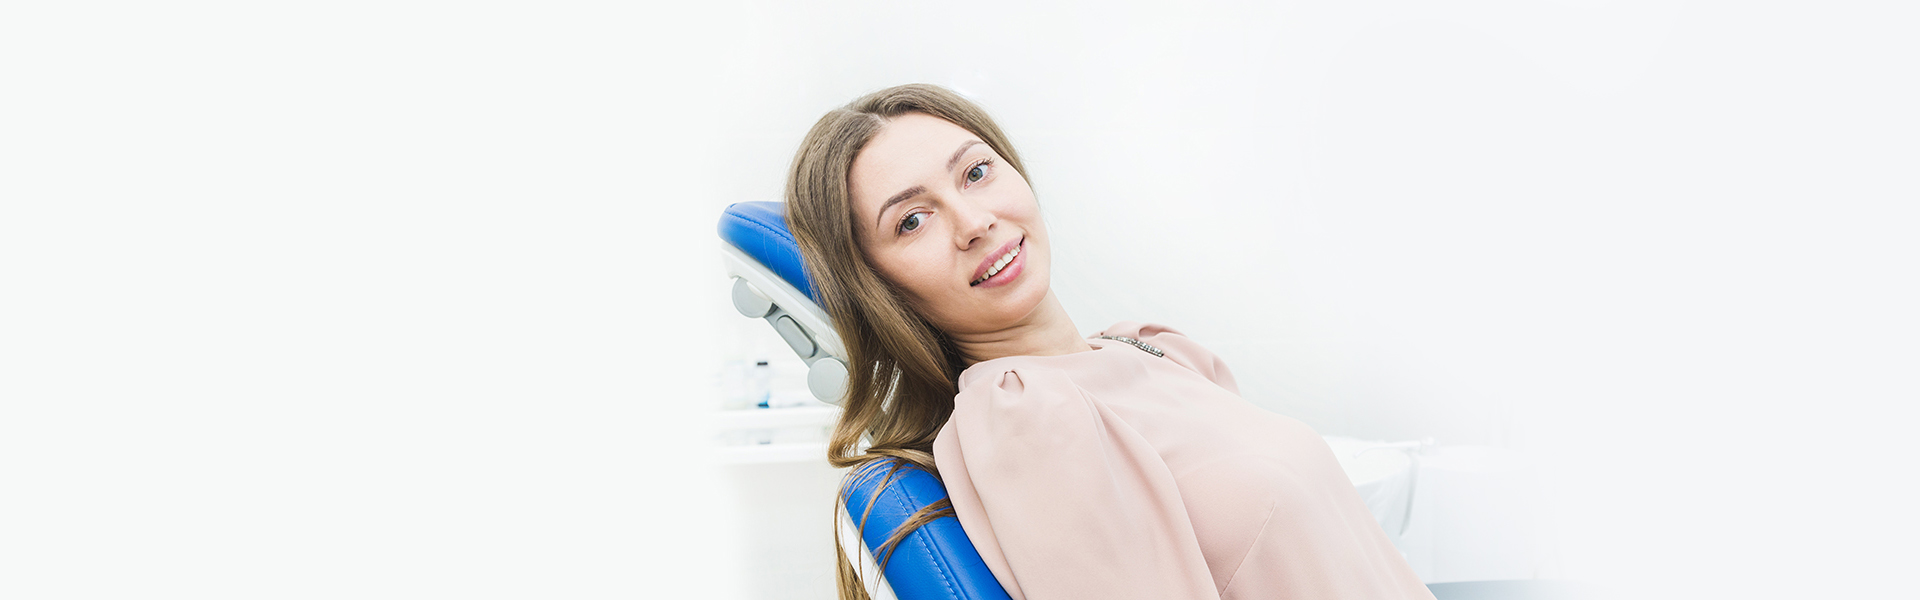 Benefits of 3D Dental Imaging for Impressions